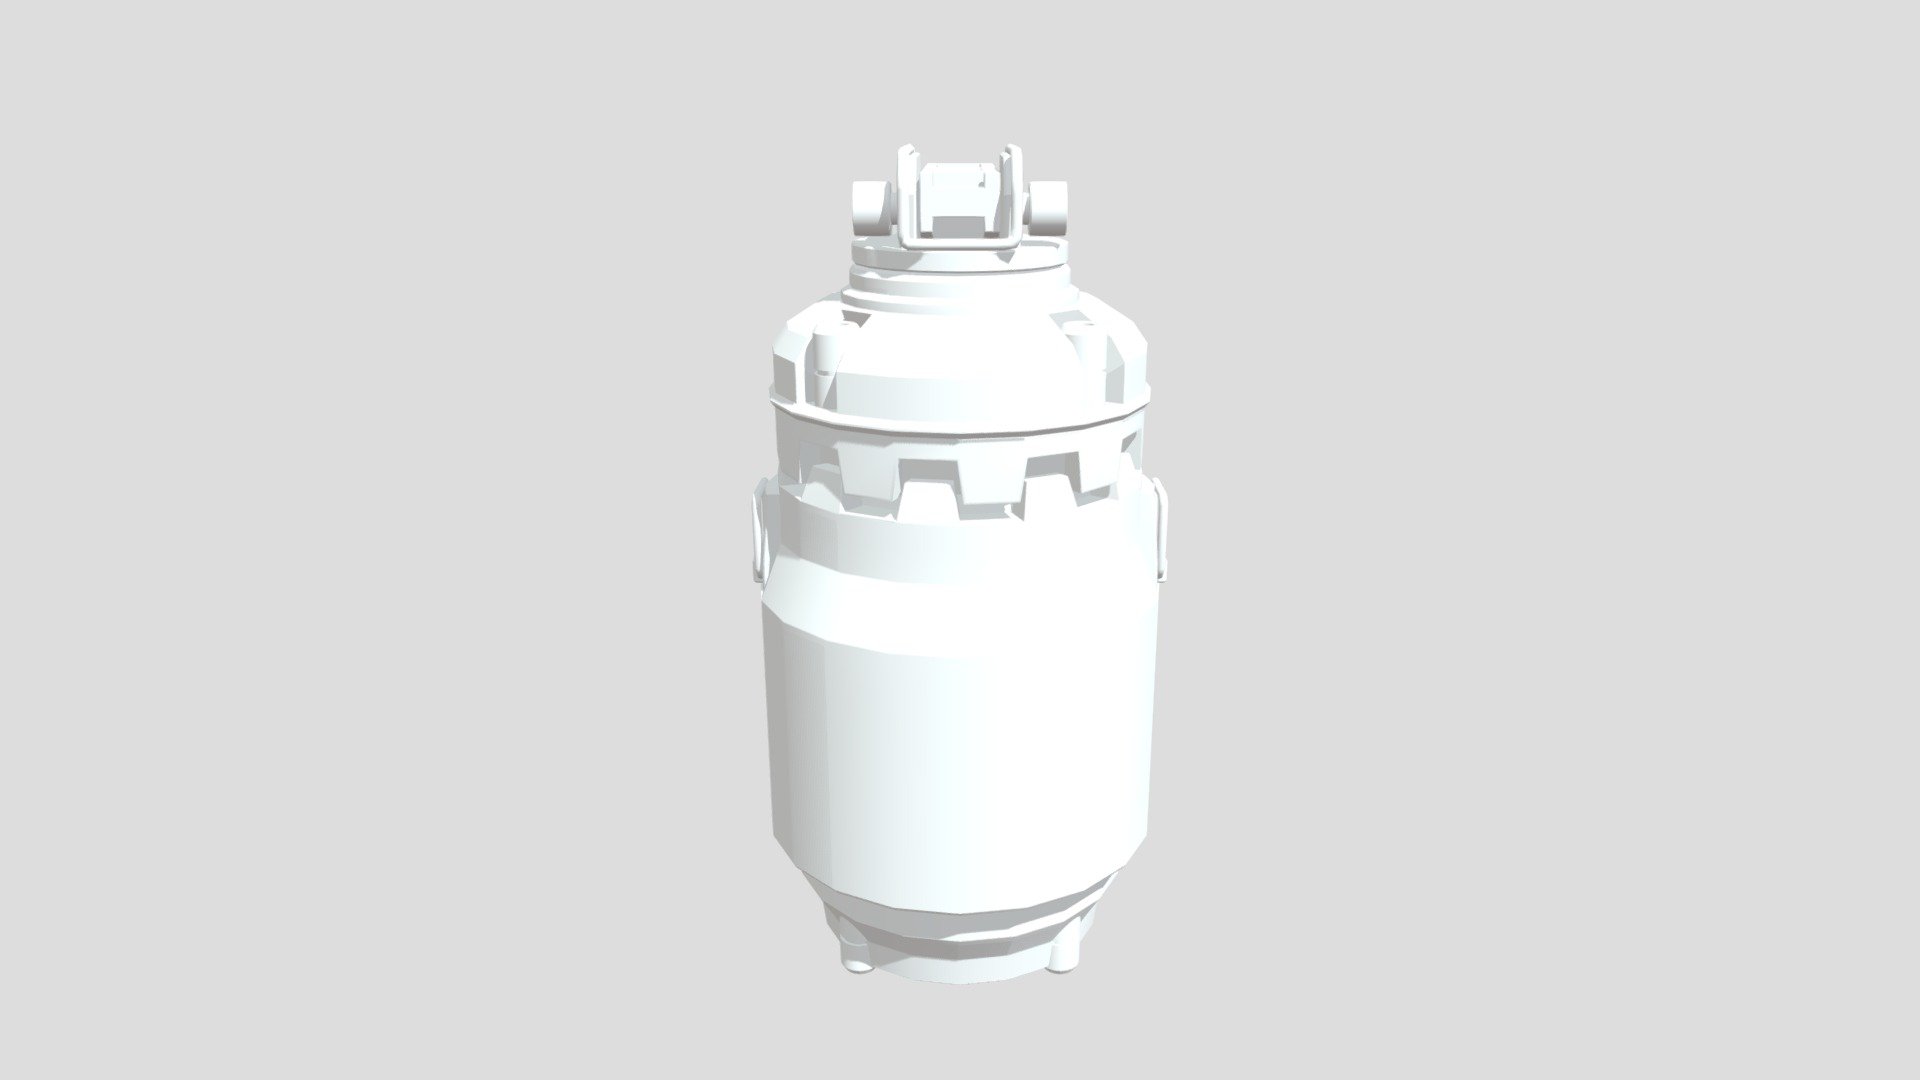 FPG form Star Citizen - Force Propulsion Grenade - 3D model by Lallenmang Lhouvum (@benkukilhouvum) 3d model